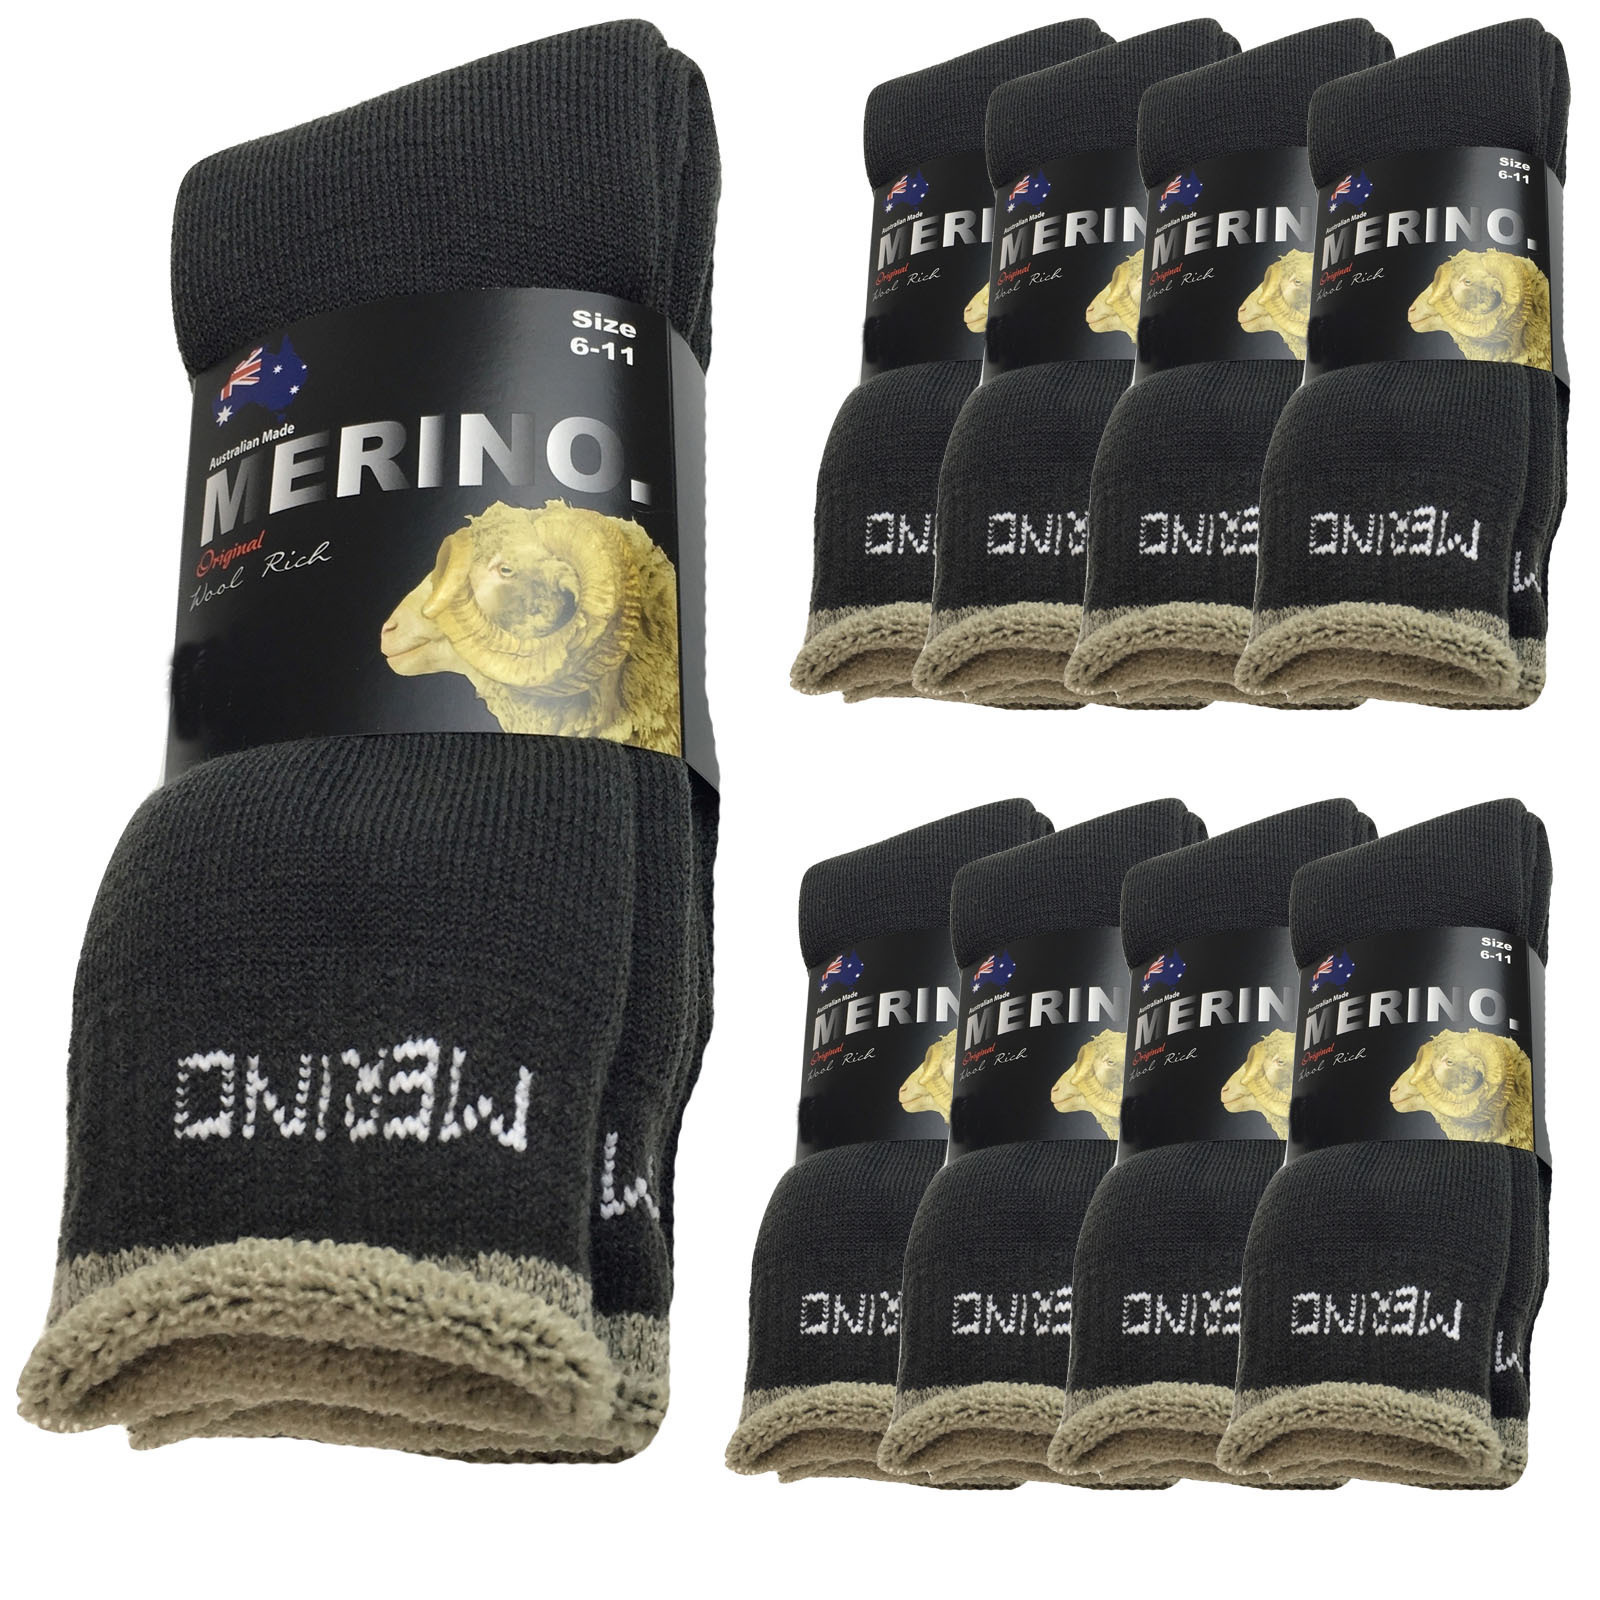 9 Pairs MERINO WOOL SOCKS Men's Heavy Duty Premium Thick Work Socks ...